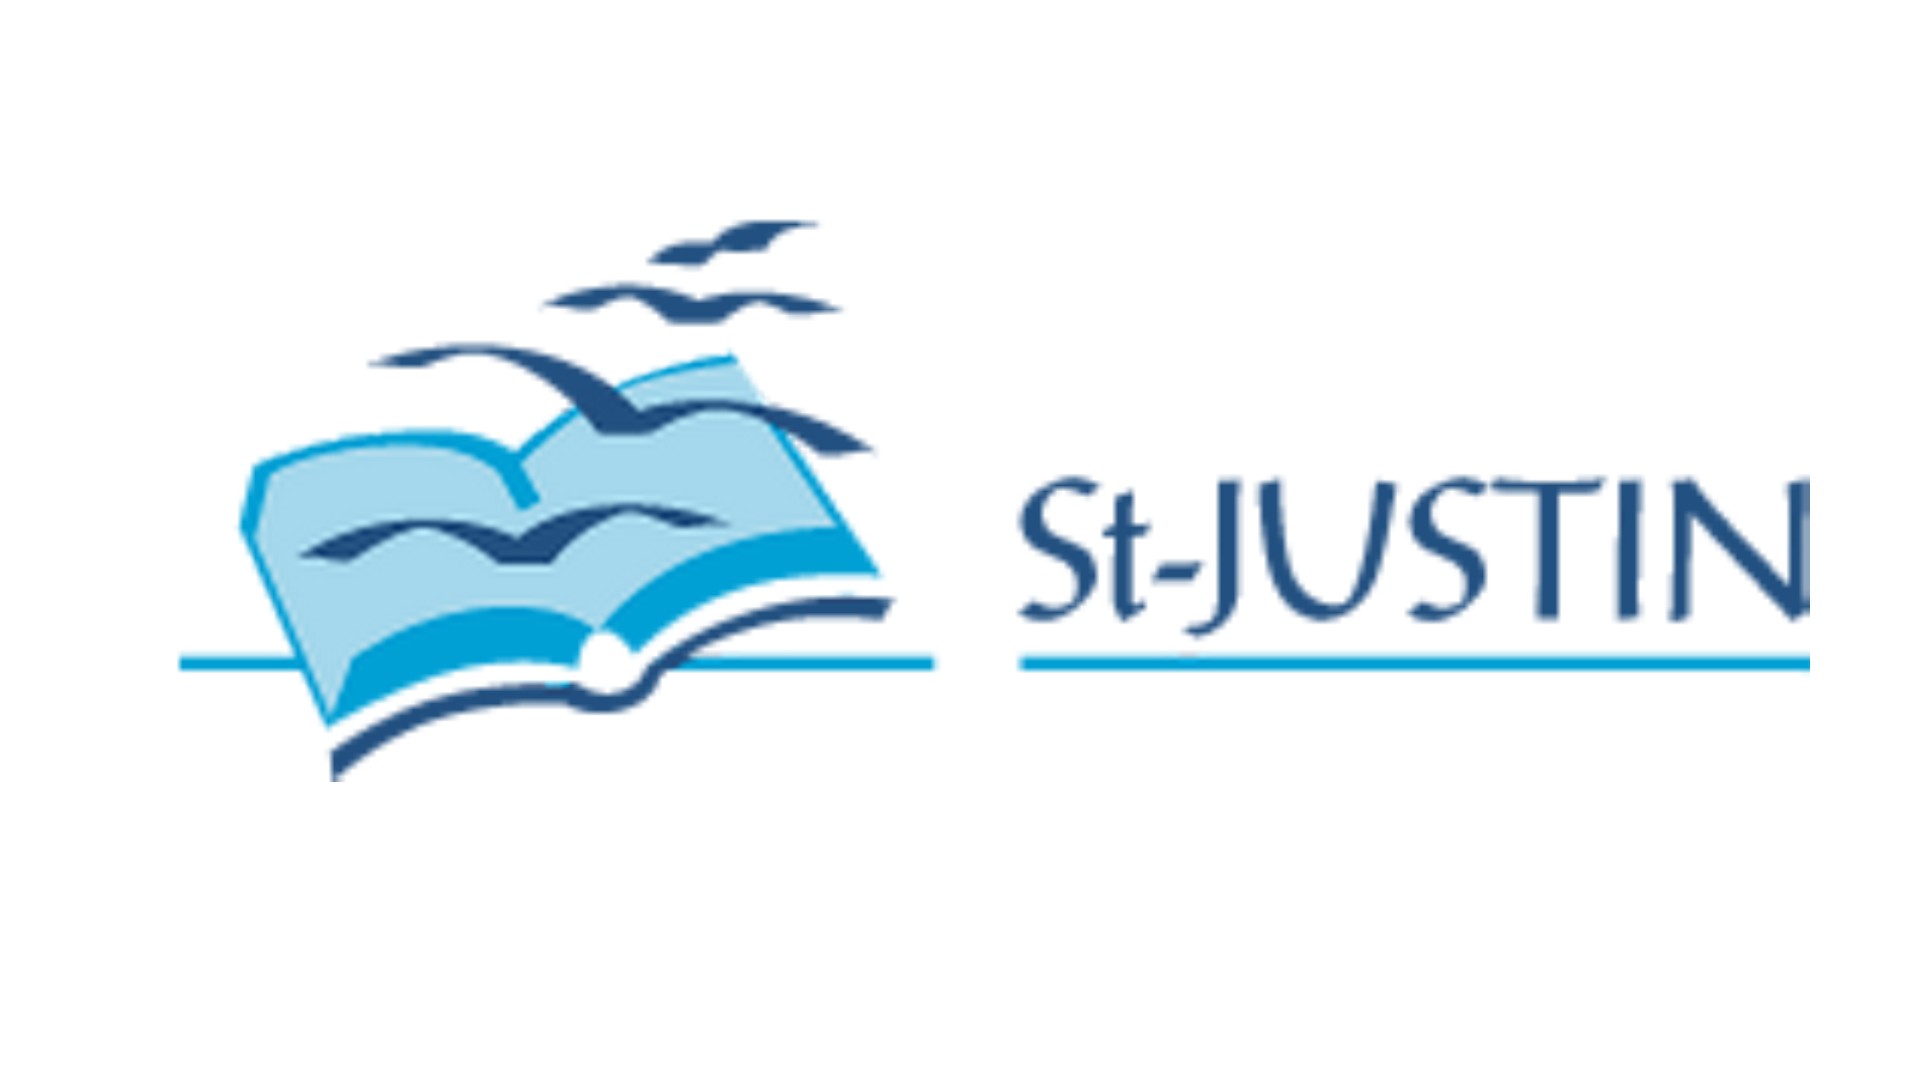 L'oeuvre St-Justin a été fondée à Fribourg en 1927